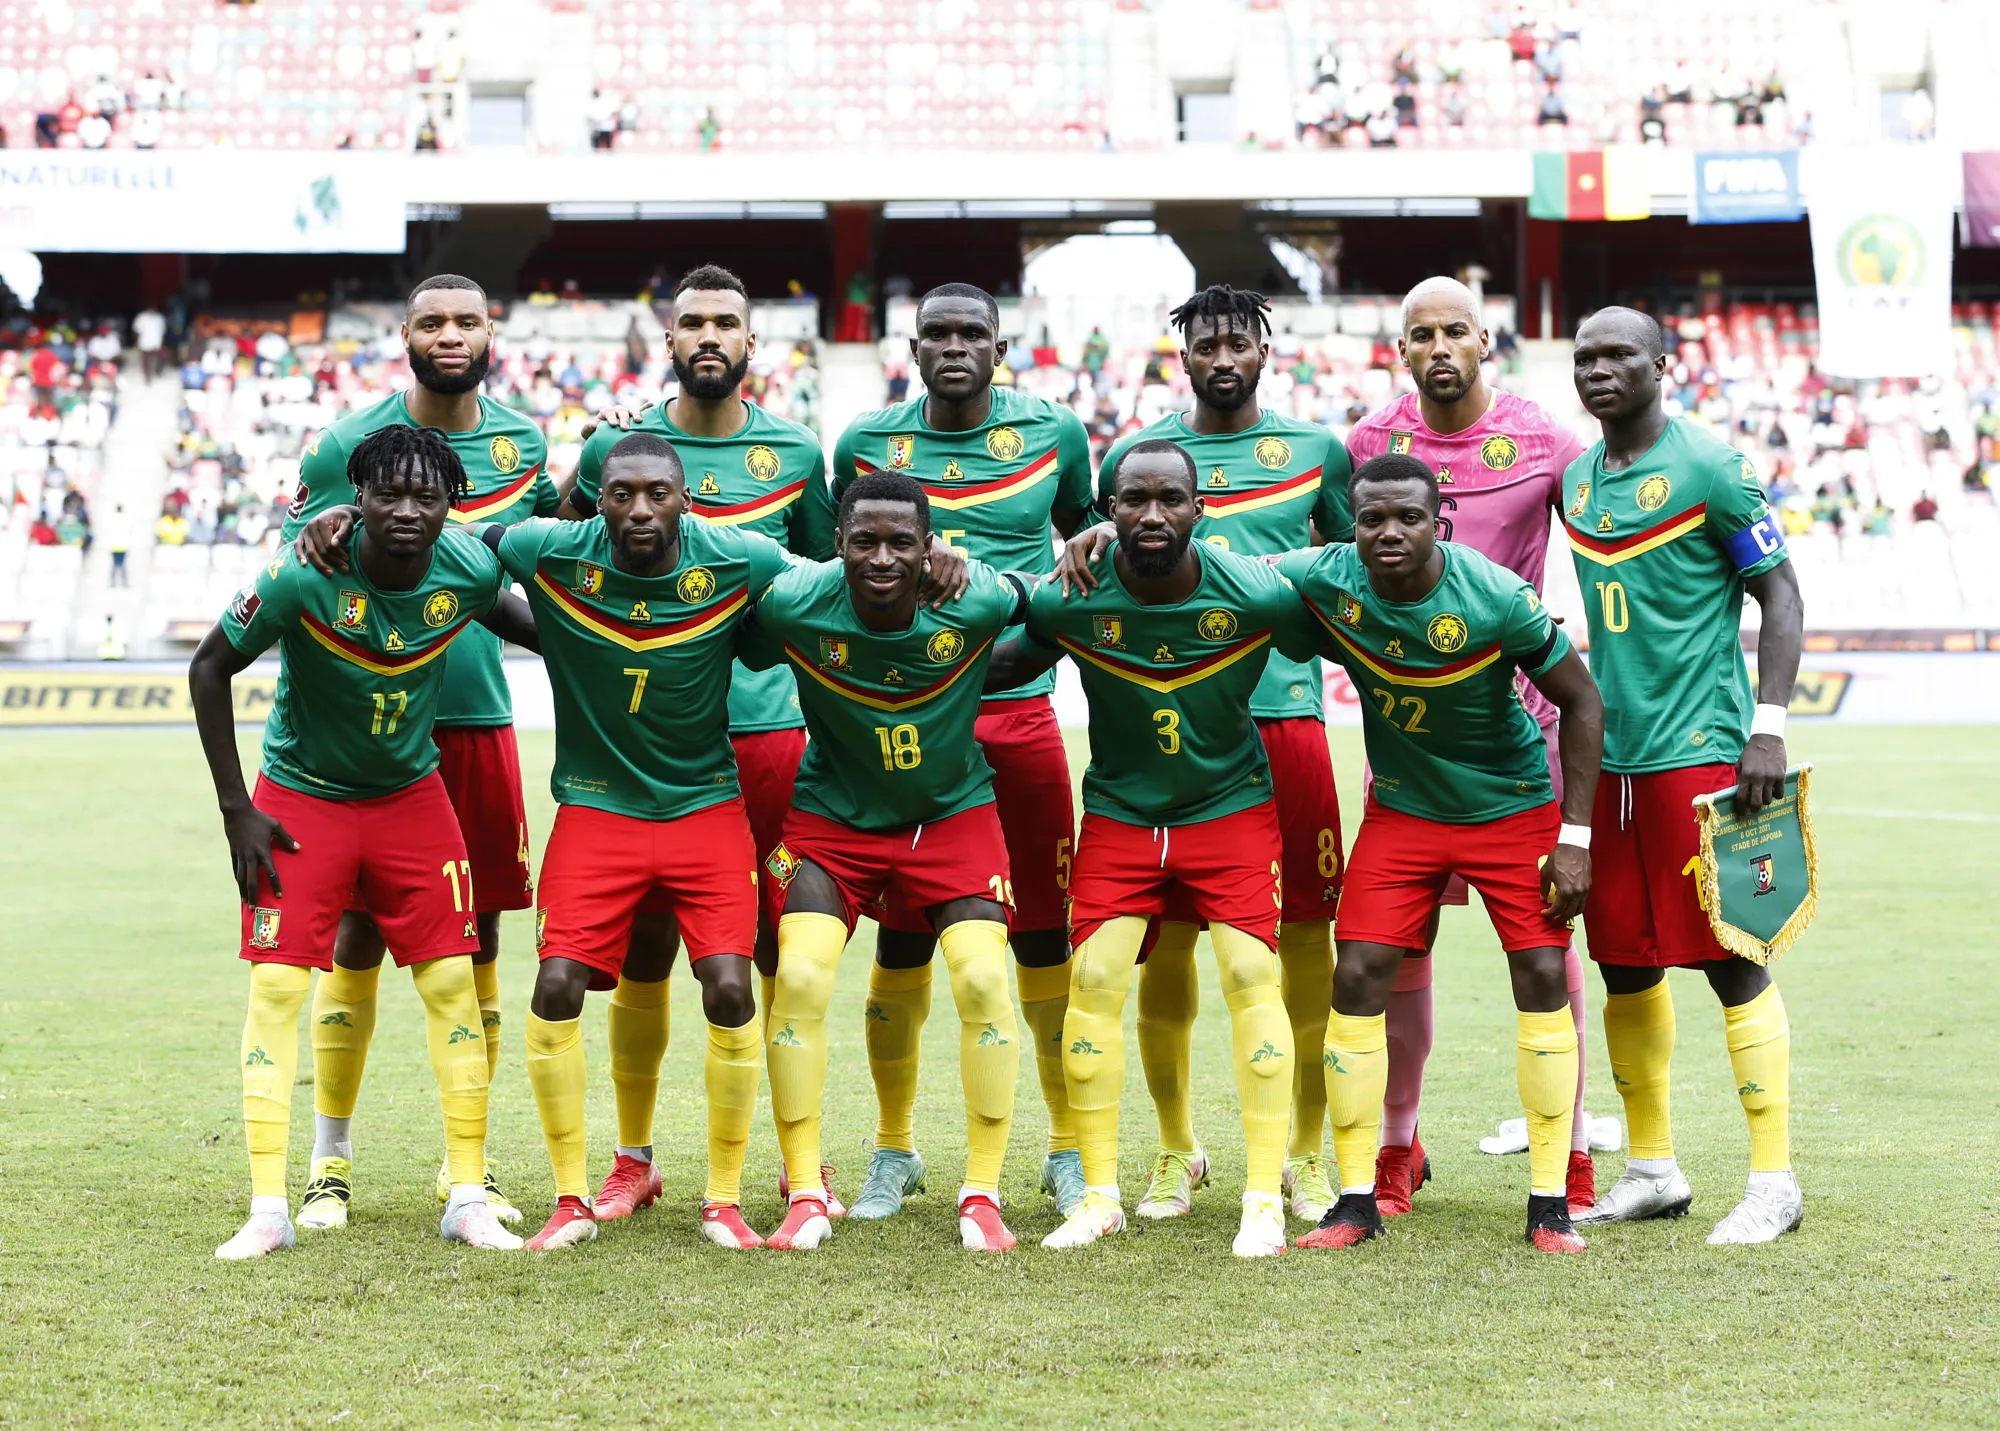 Neuf joueurs de Ligue 1 sélectionnés avec le Cameroun pour la CAN